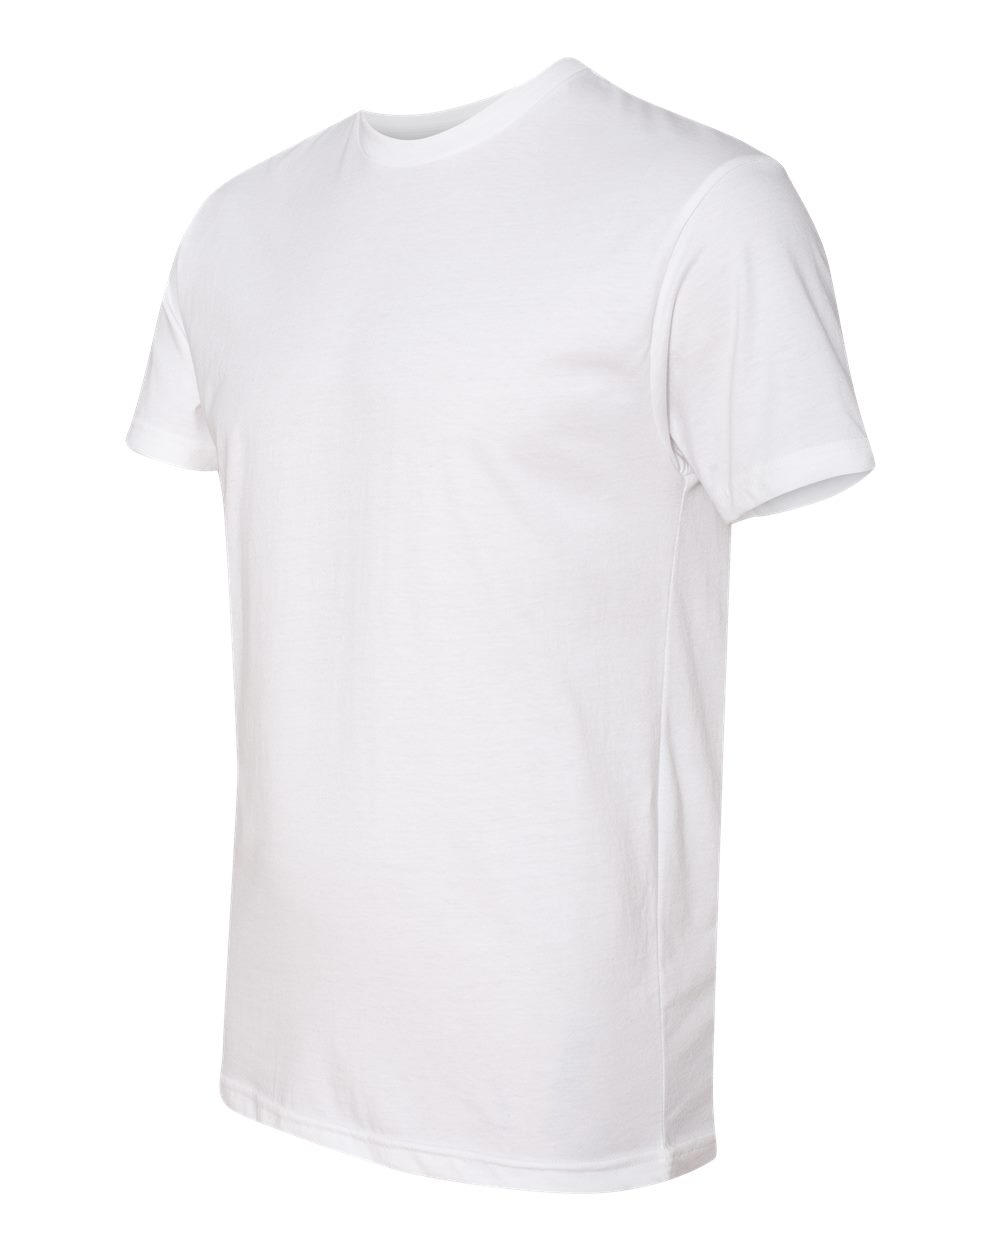 White Next T-Shirt – The Vinyl